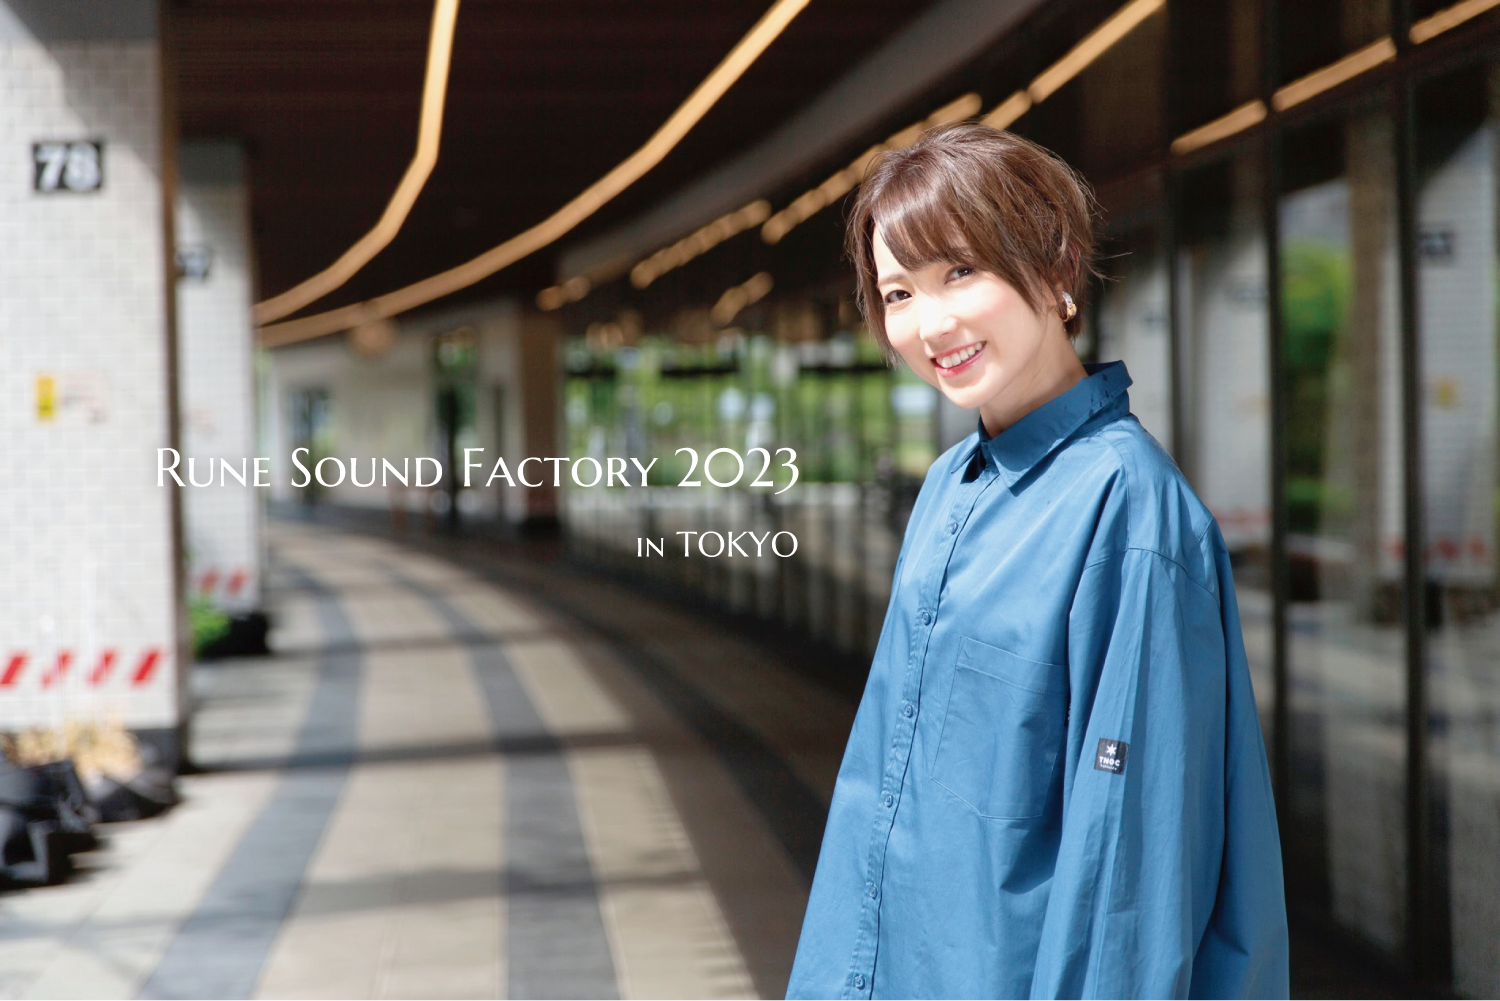 Rune Sound Factory 2023 in TOKYO